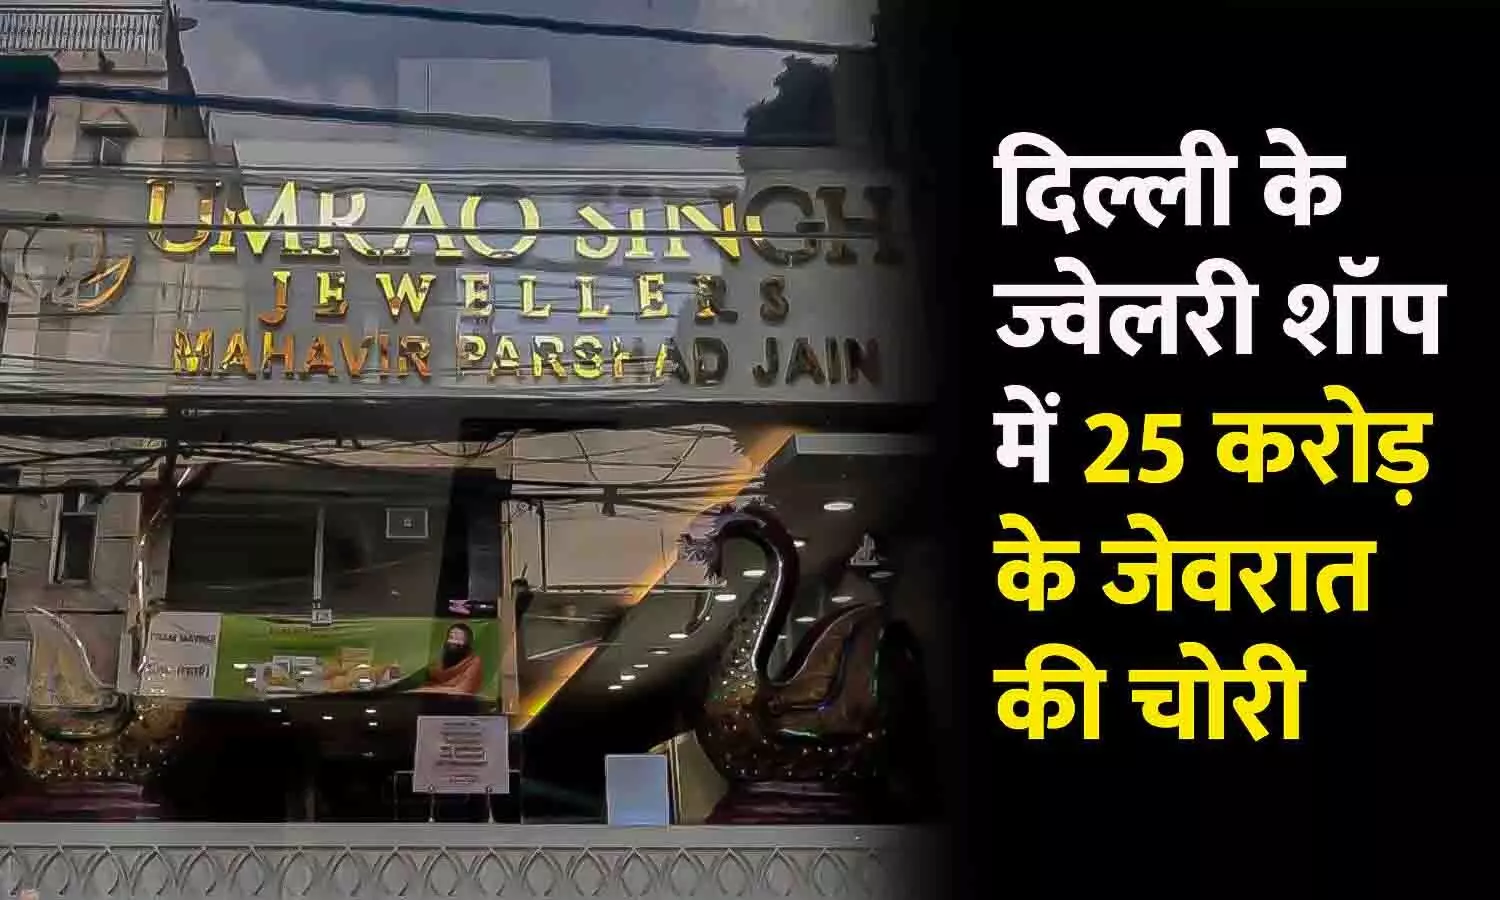 दिल्ली के ज्वेलरी शॉप में 25 करोड़ की चोरी: शोरूम की छत काटकर घुसे थे चोर, 25 करोड़ के हीरे और सोने के जेवरात ले गए